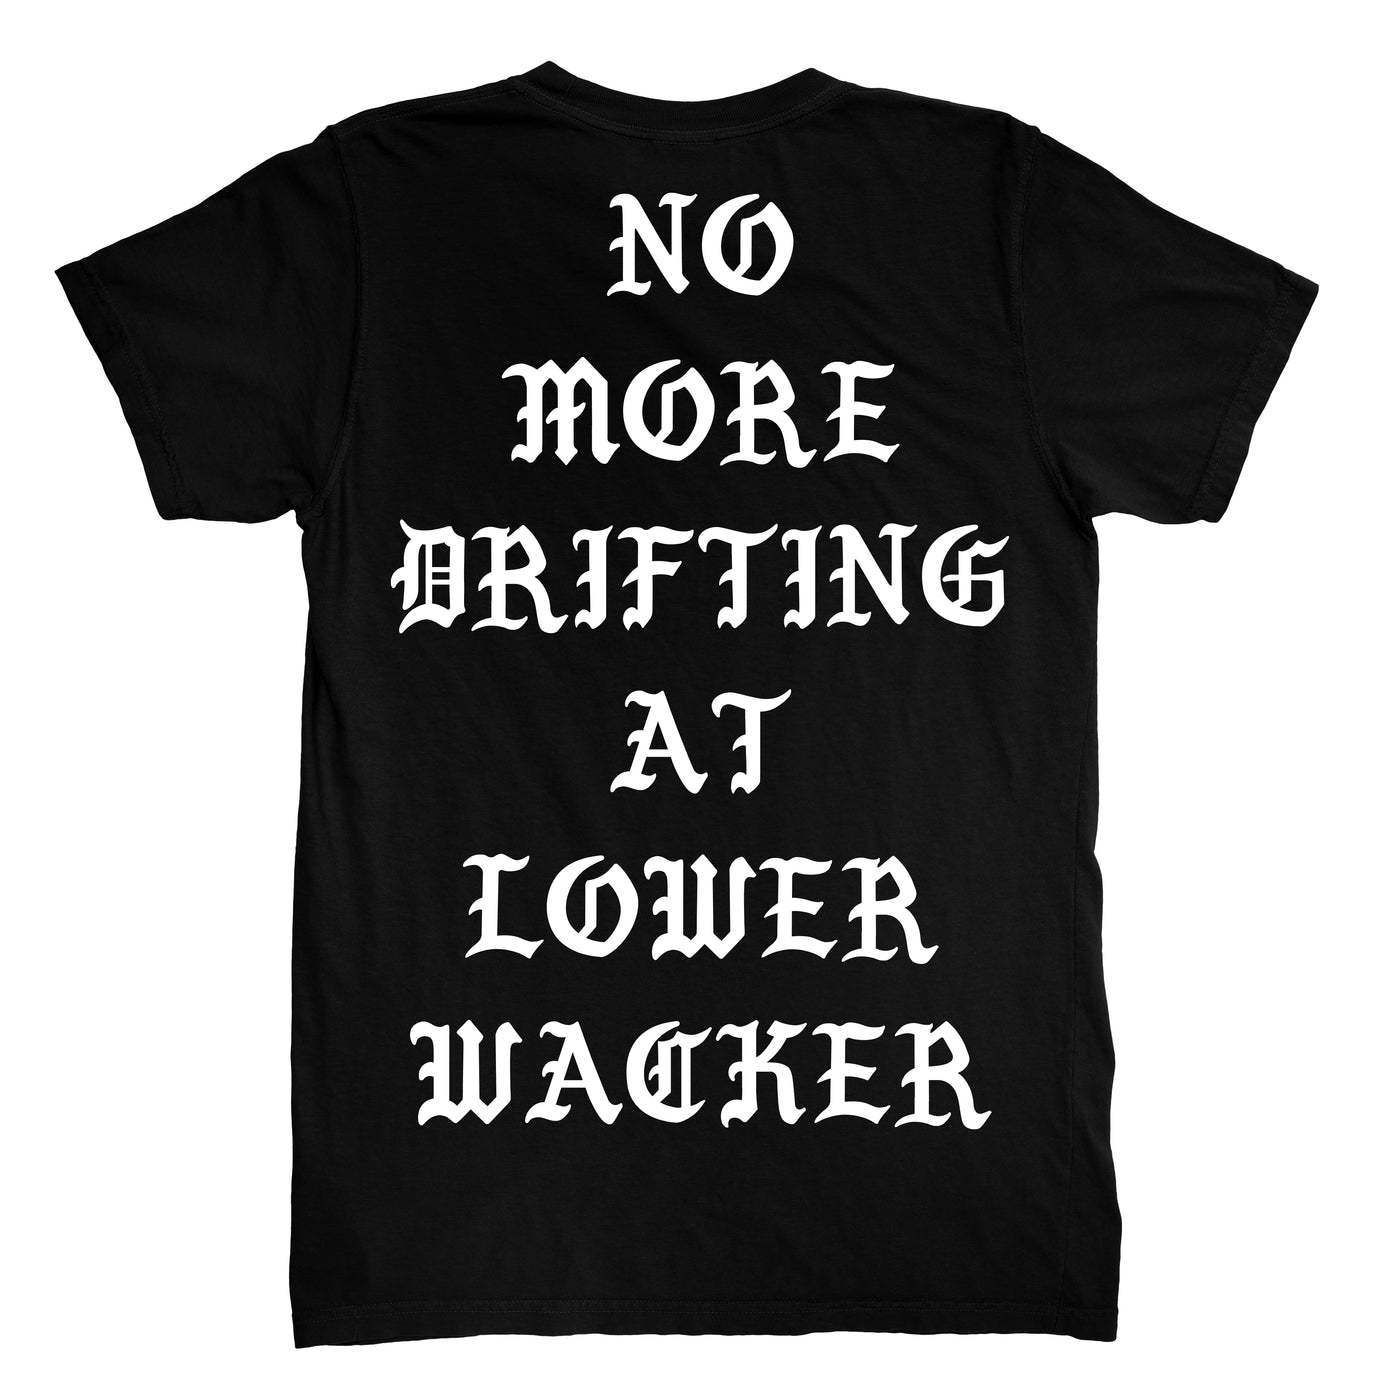 STYLN® LOWER WACKER CHICAGO T-shirt